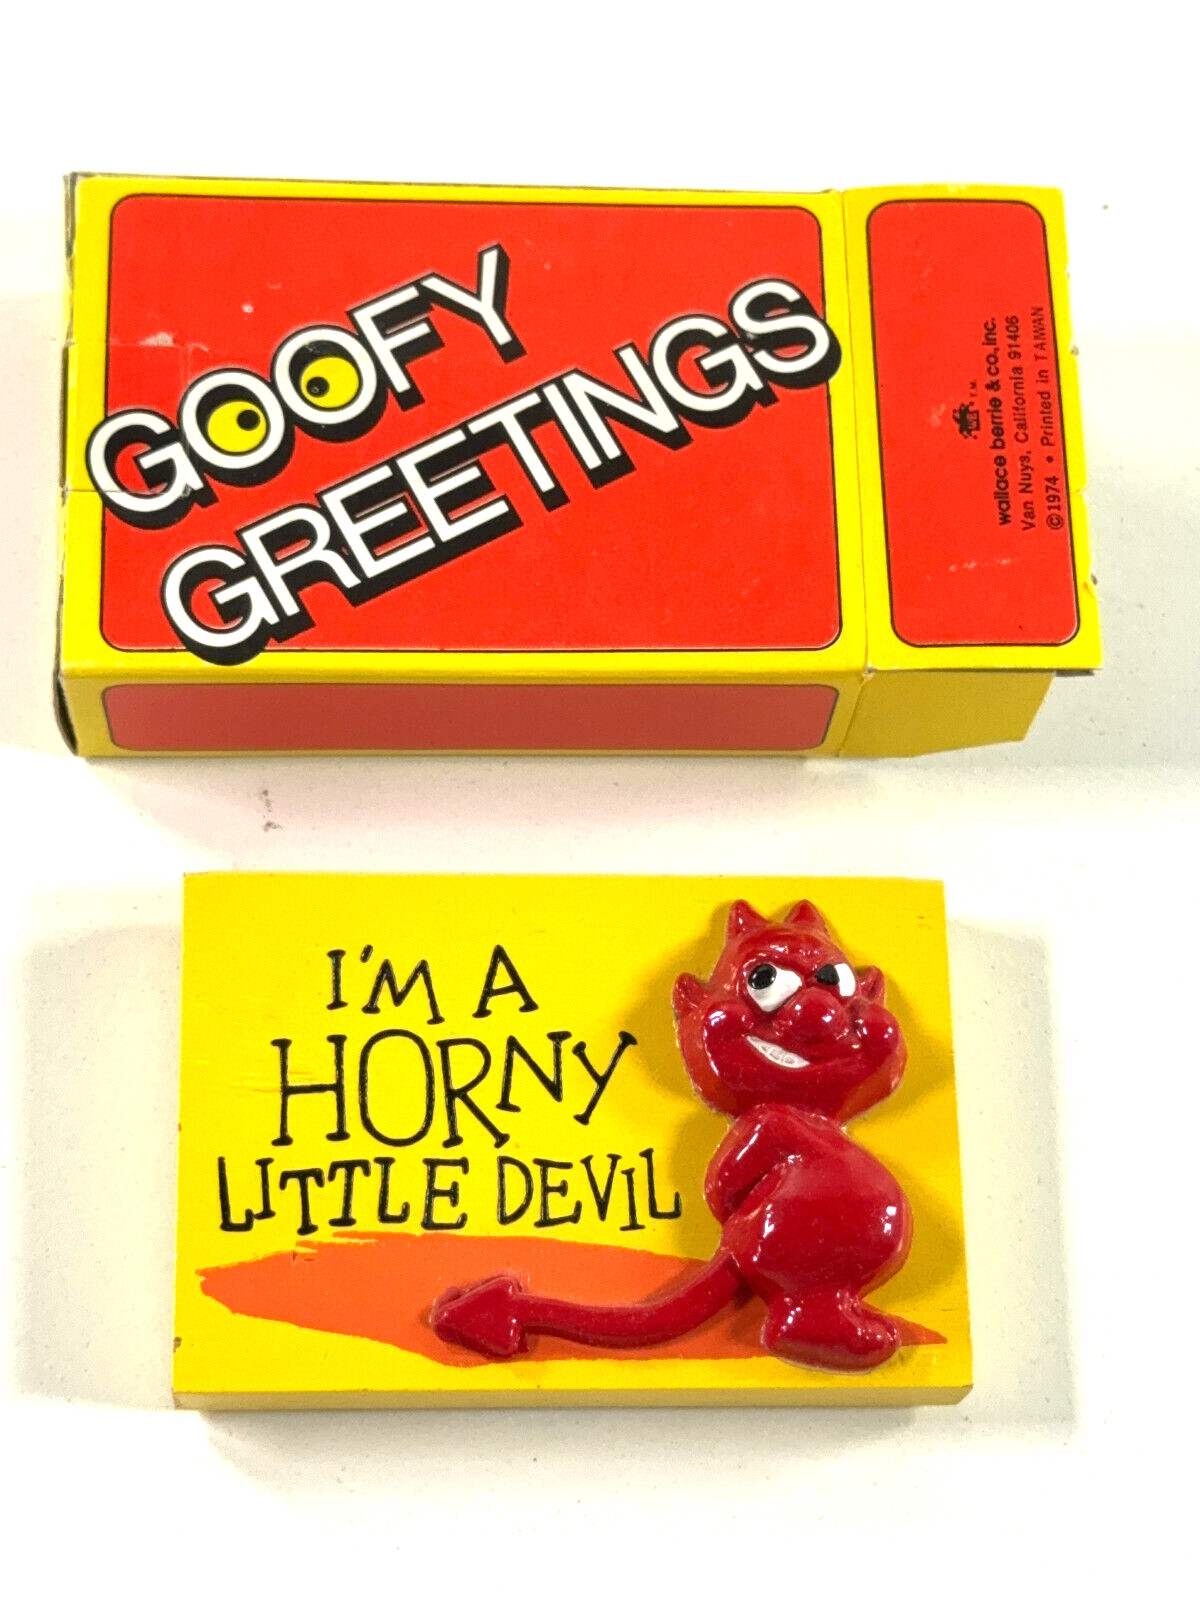 vtg 1974 Goofy Greetings Horny Little Devil gag gift halloween 